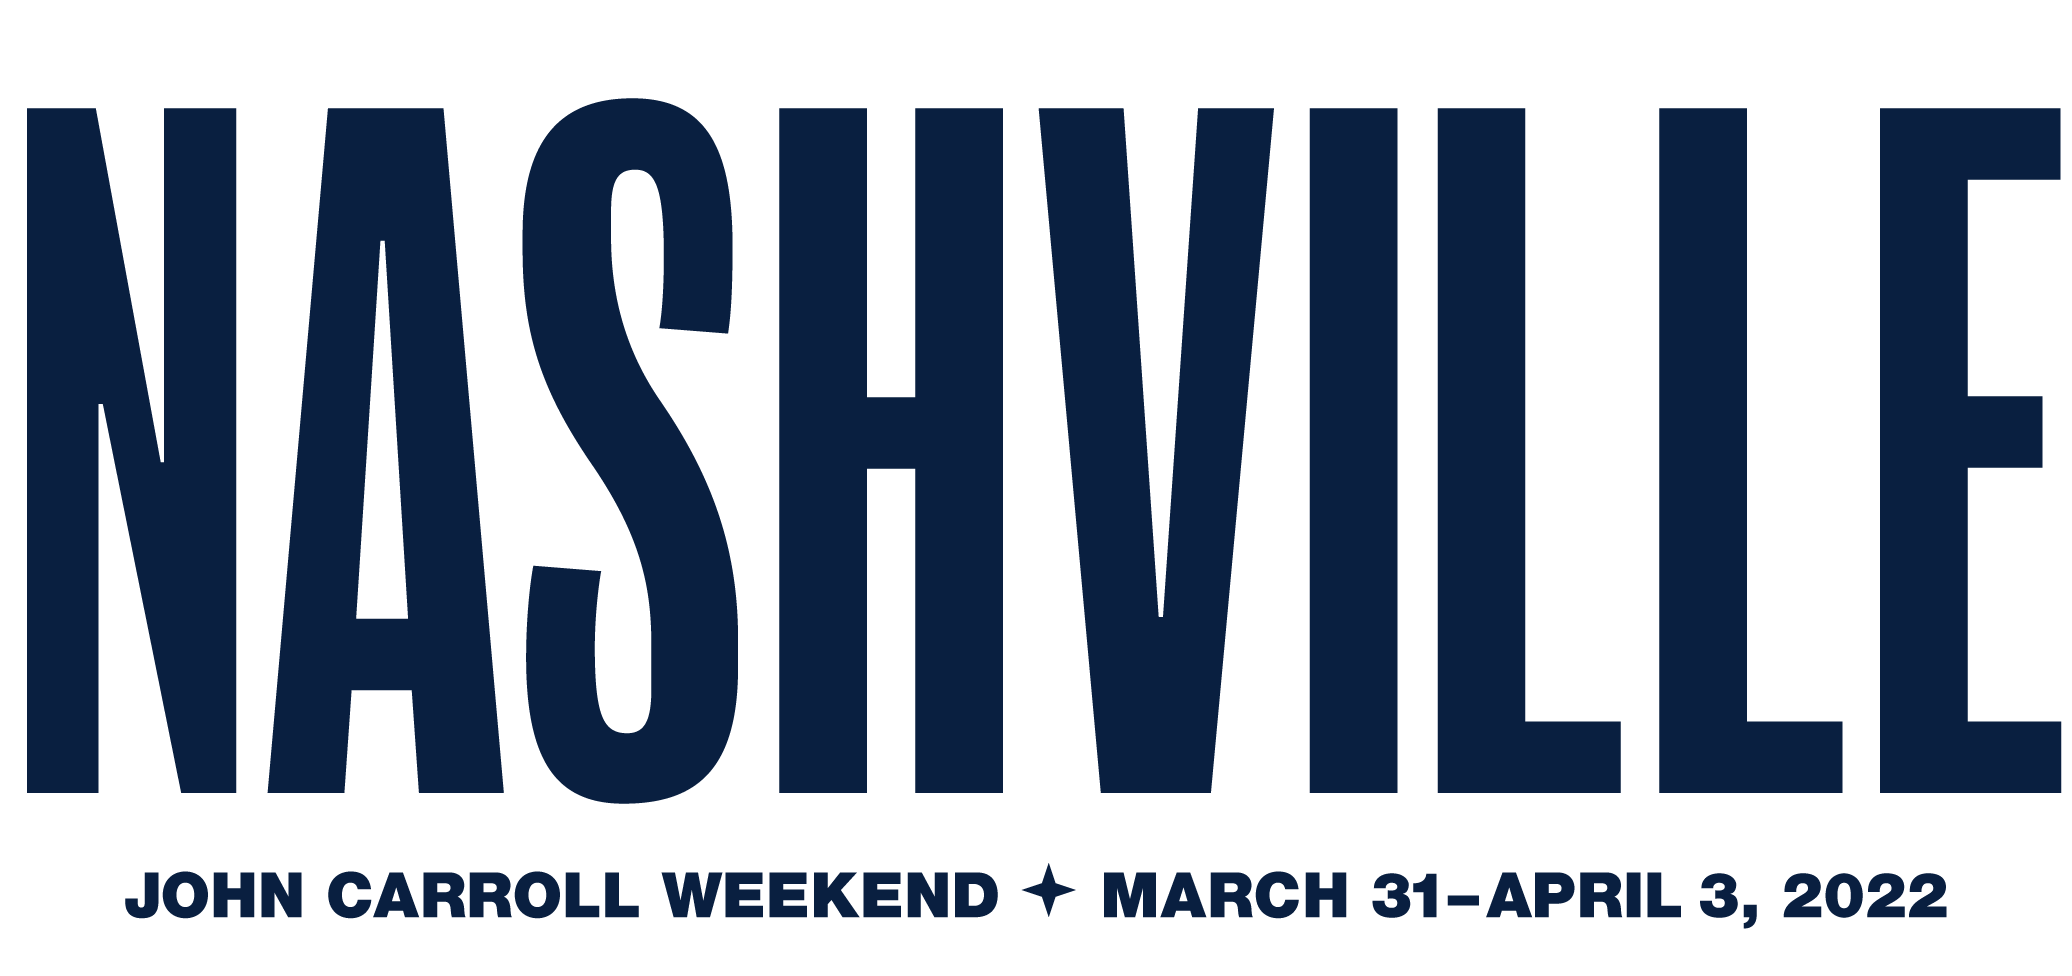 Nashville. John Carroll Weekend. March 31-April 3, 2022